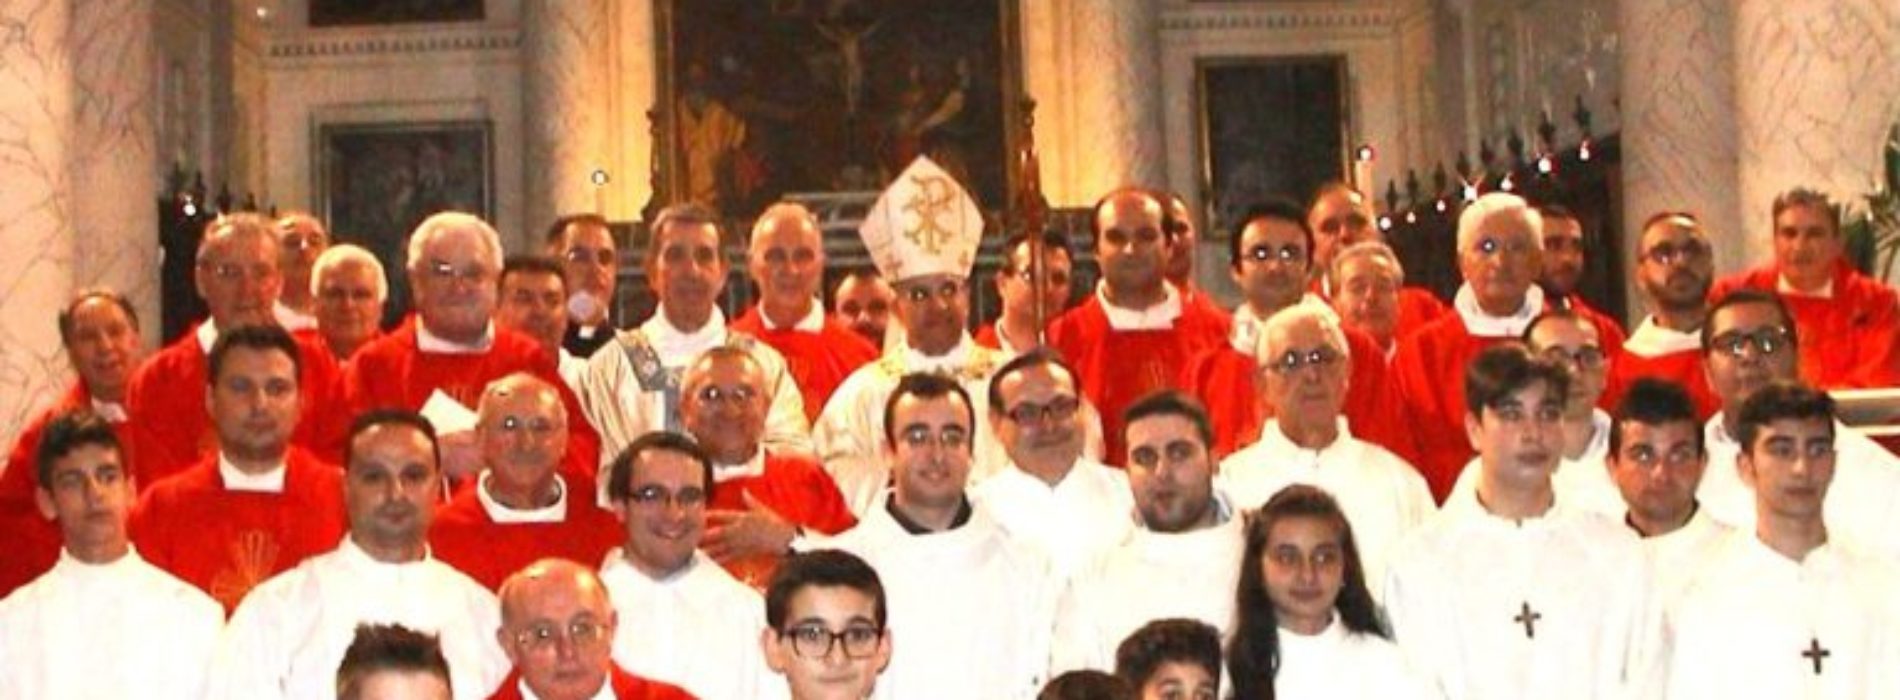 Mons. Bongiovanni celebrerà Messa con Papa Francesco a chiusura del suo giubileo sacerdotale